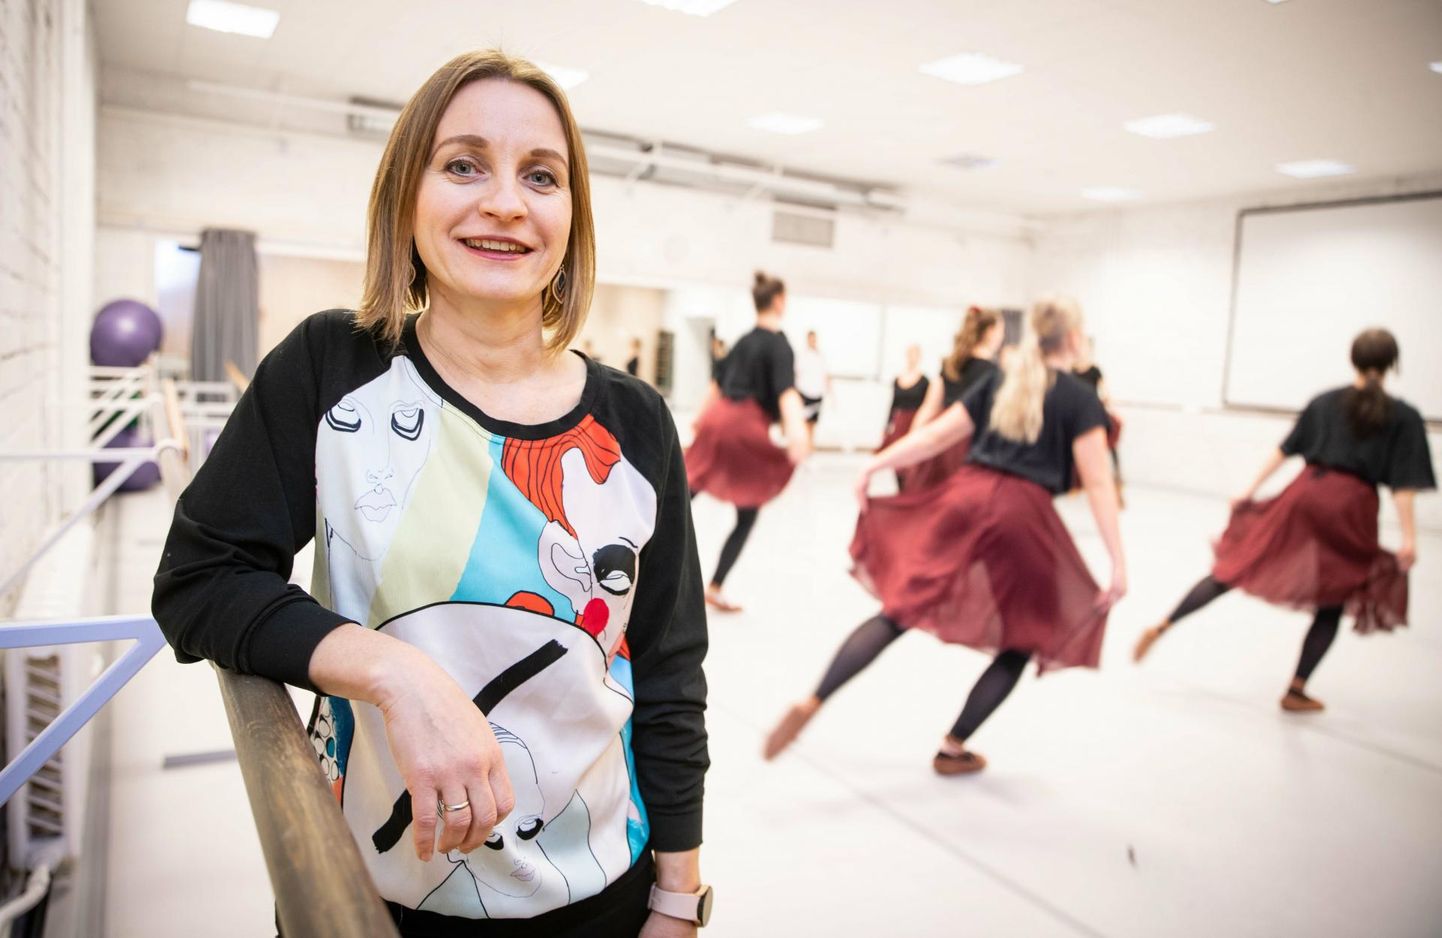 Одна из самых больших проблем, по словам Янэ Миллер-Пярнамяги, председателя Эстонского Союза танцевального образования по интересам, заключается в том, что из школ по интересам уходят именно квалифицированные учителя. Это также означает падение качества обучения.